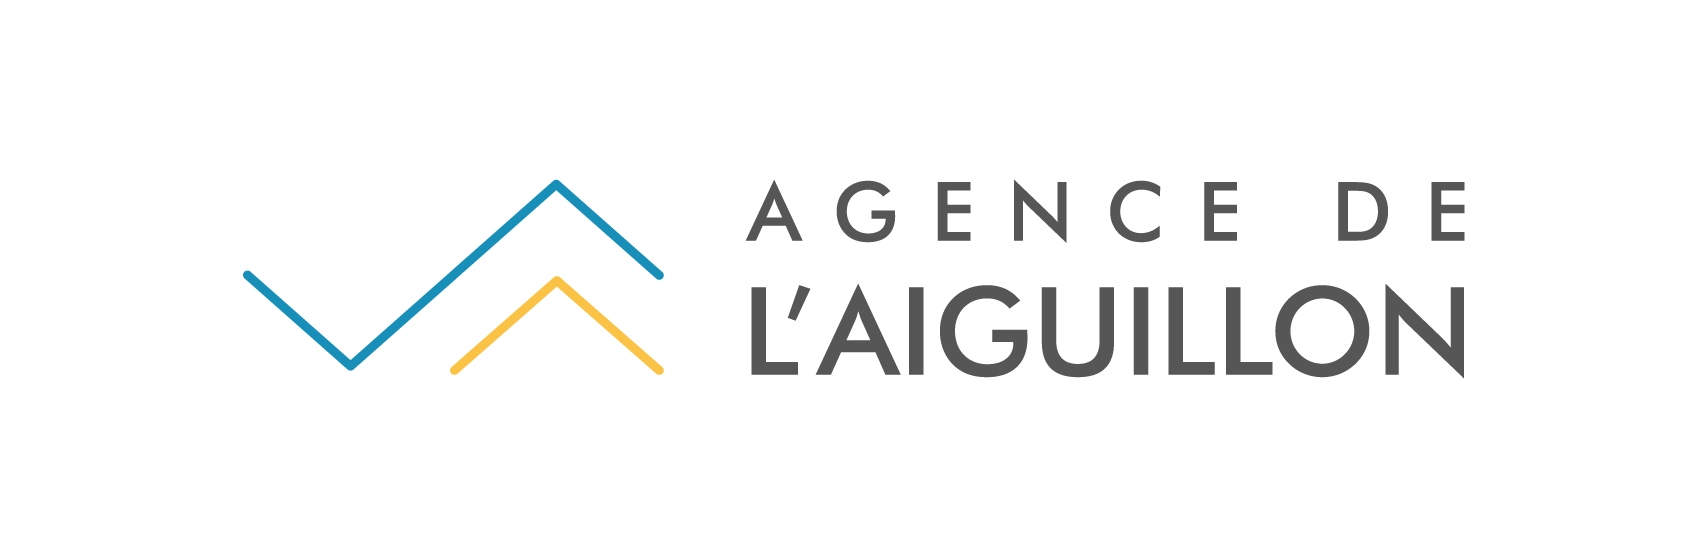 logo-agence-aiguillon-1